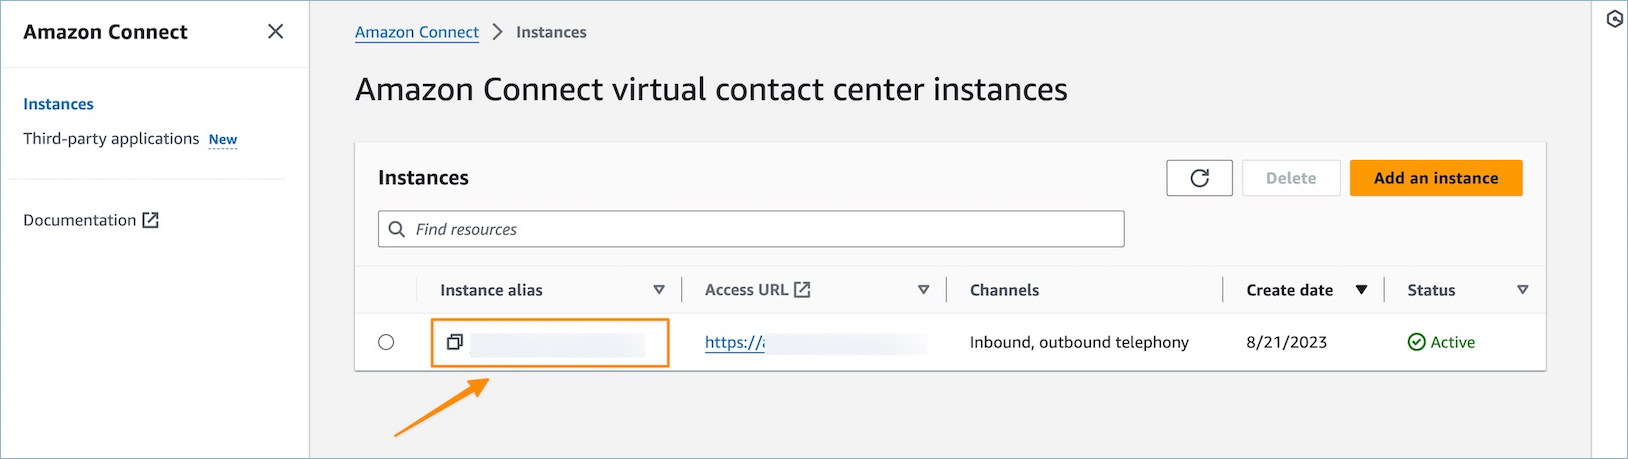 Die Seite mit den Instanzen des virtuellen Kontaktzentrums von Amazon Connect.